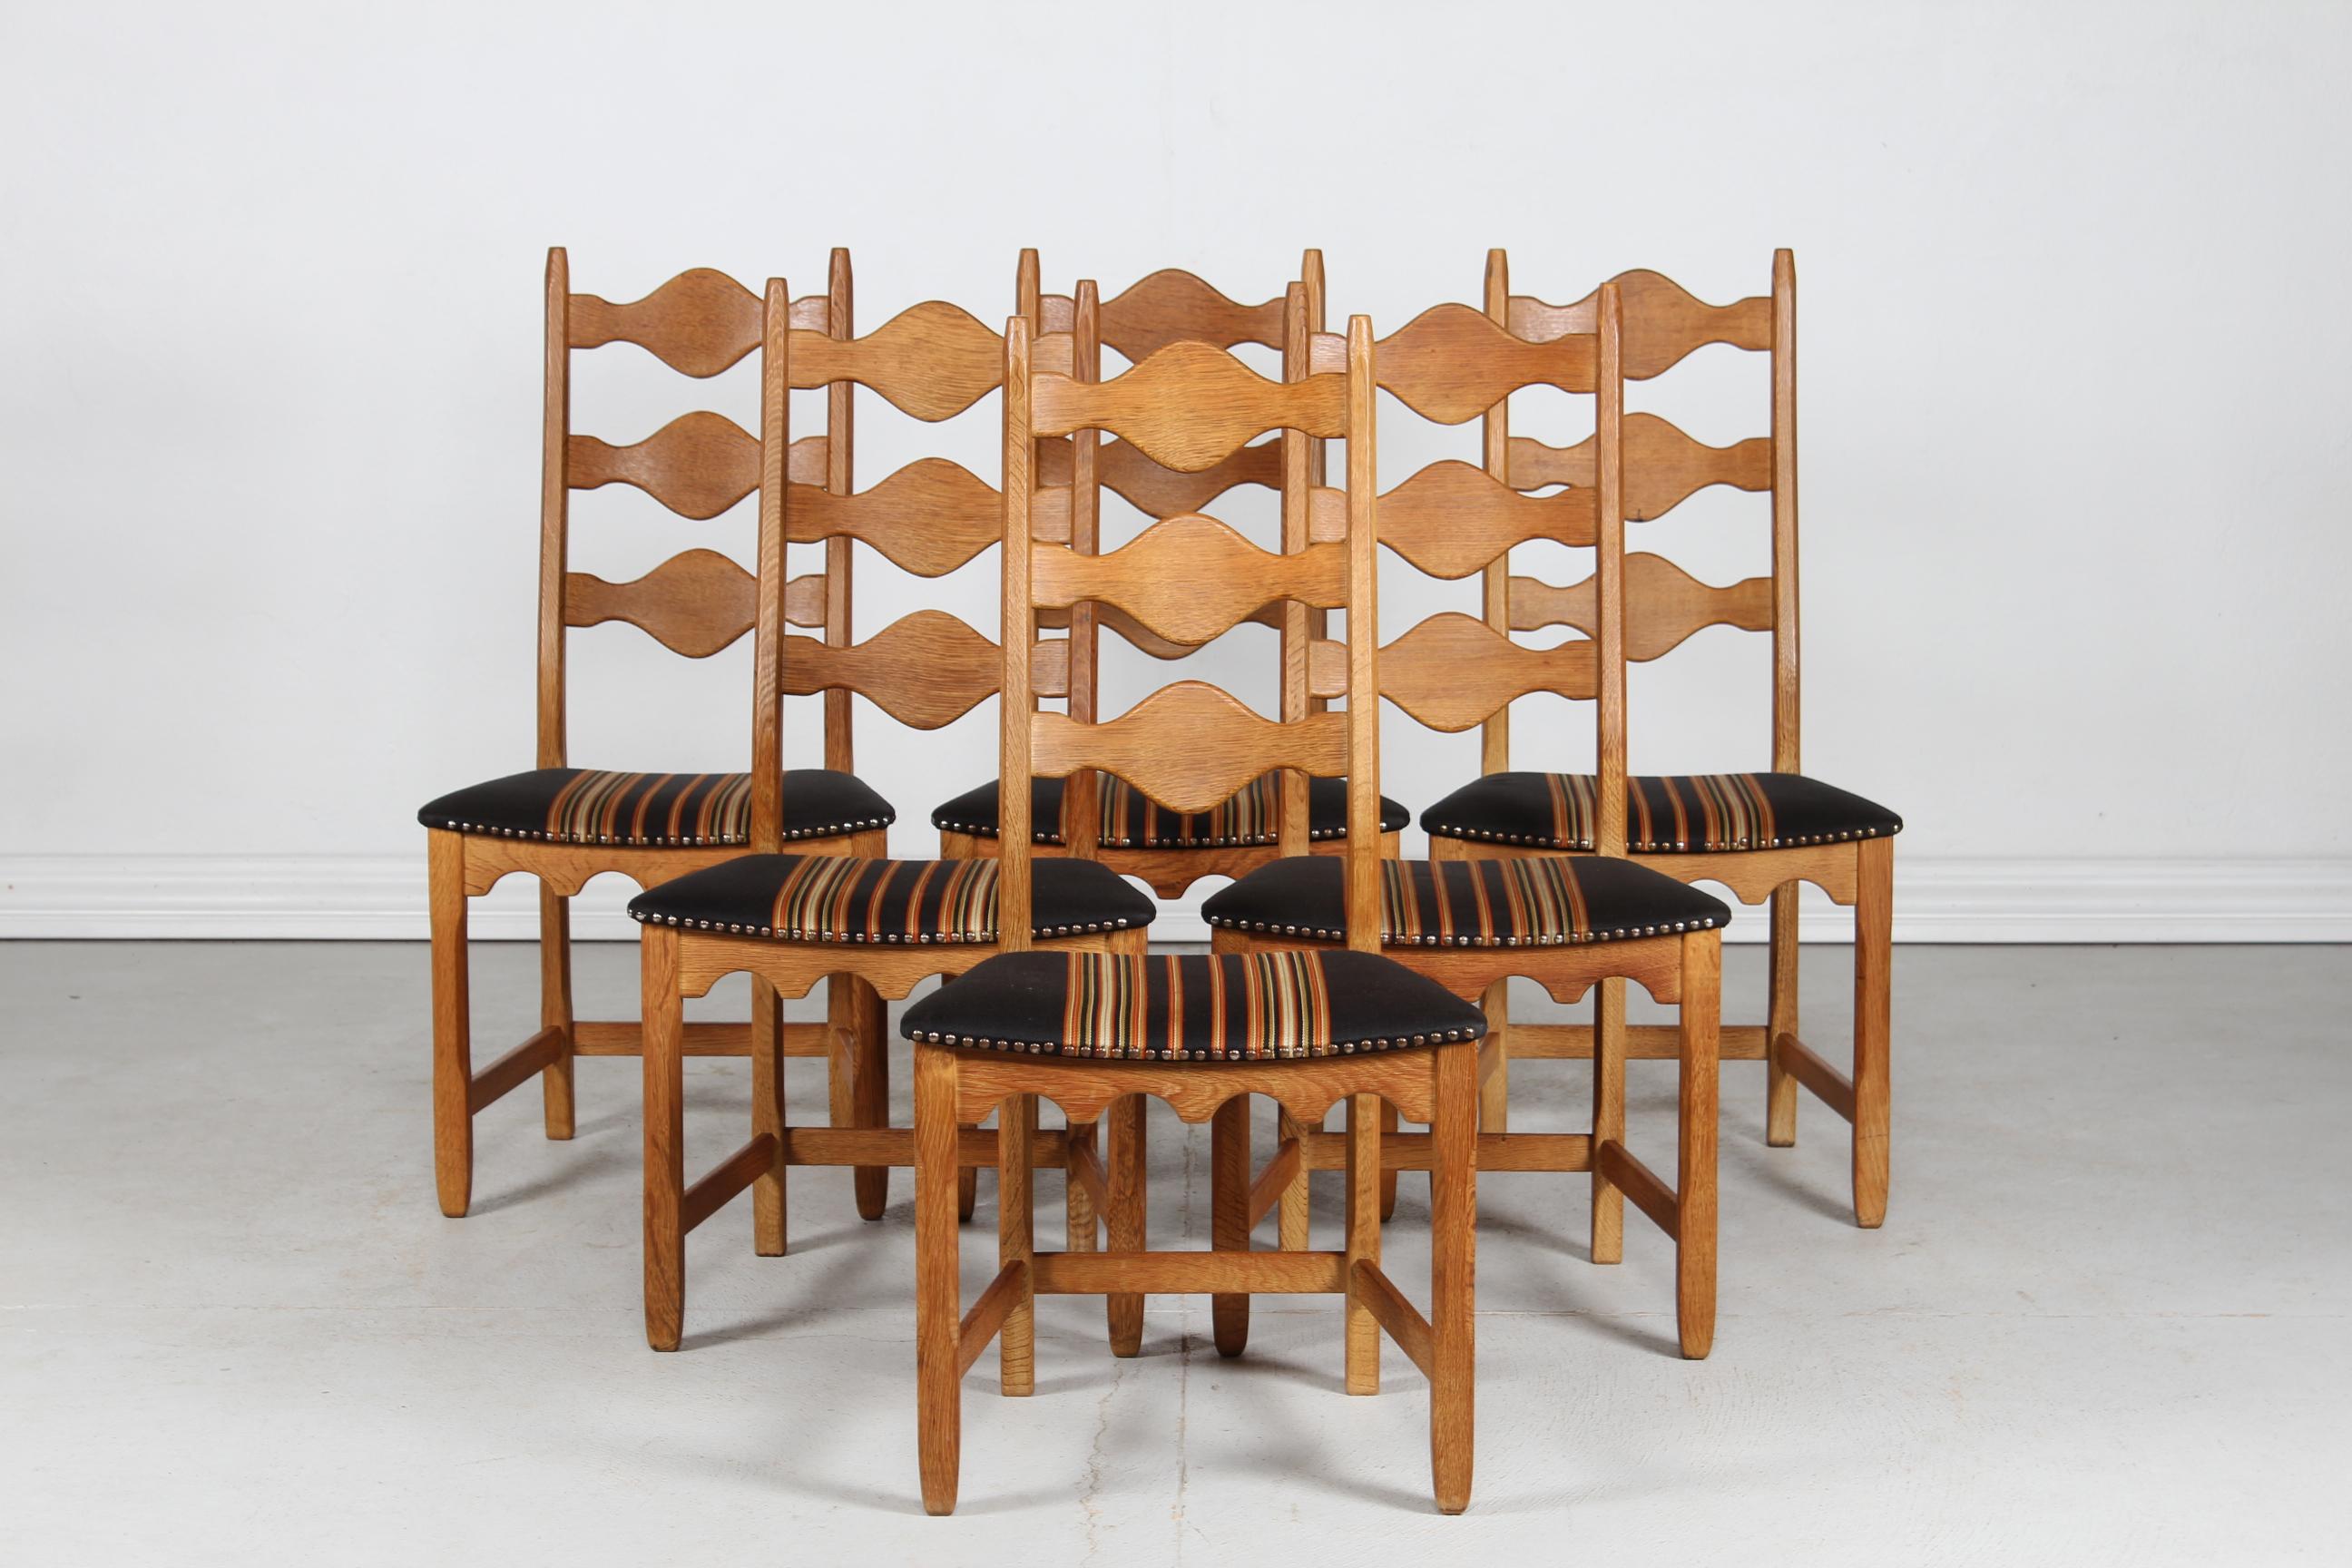 Hier ist ein Satz von 6 dänischen Vintage-Stühlen im tollen Landhausstil. 
Sie wurden von Henning Kjærnulf entworfen und von der dänischen Firma Nyrup Møbelfabrik/ EG Furniture hergestellt.
Die Stühle sind aus massiver Eiche mit hoher Rückenlehne